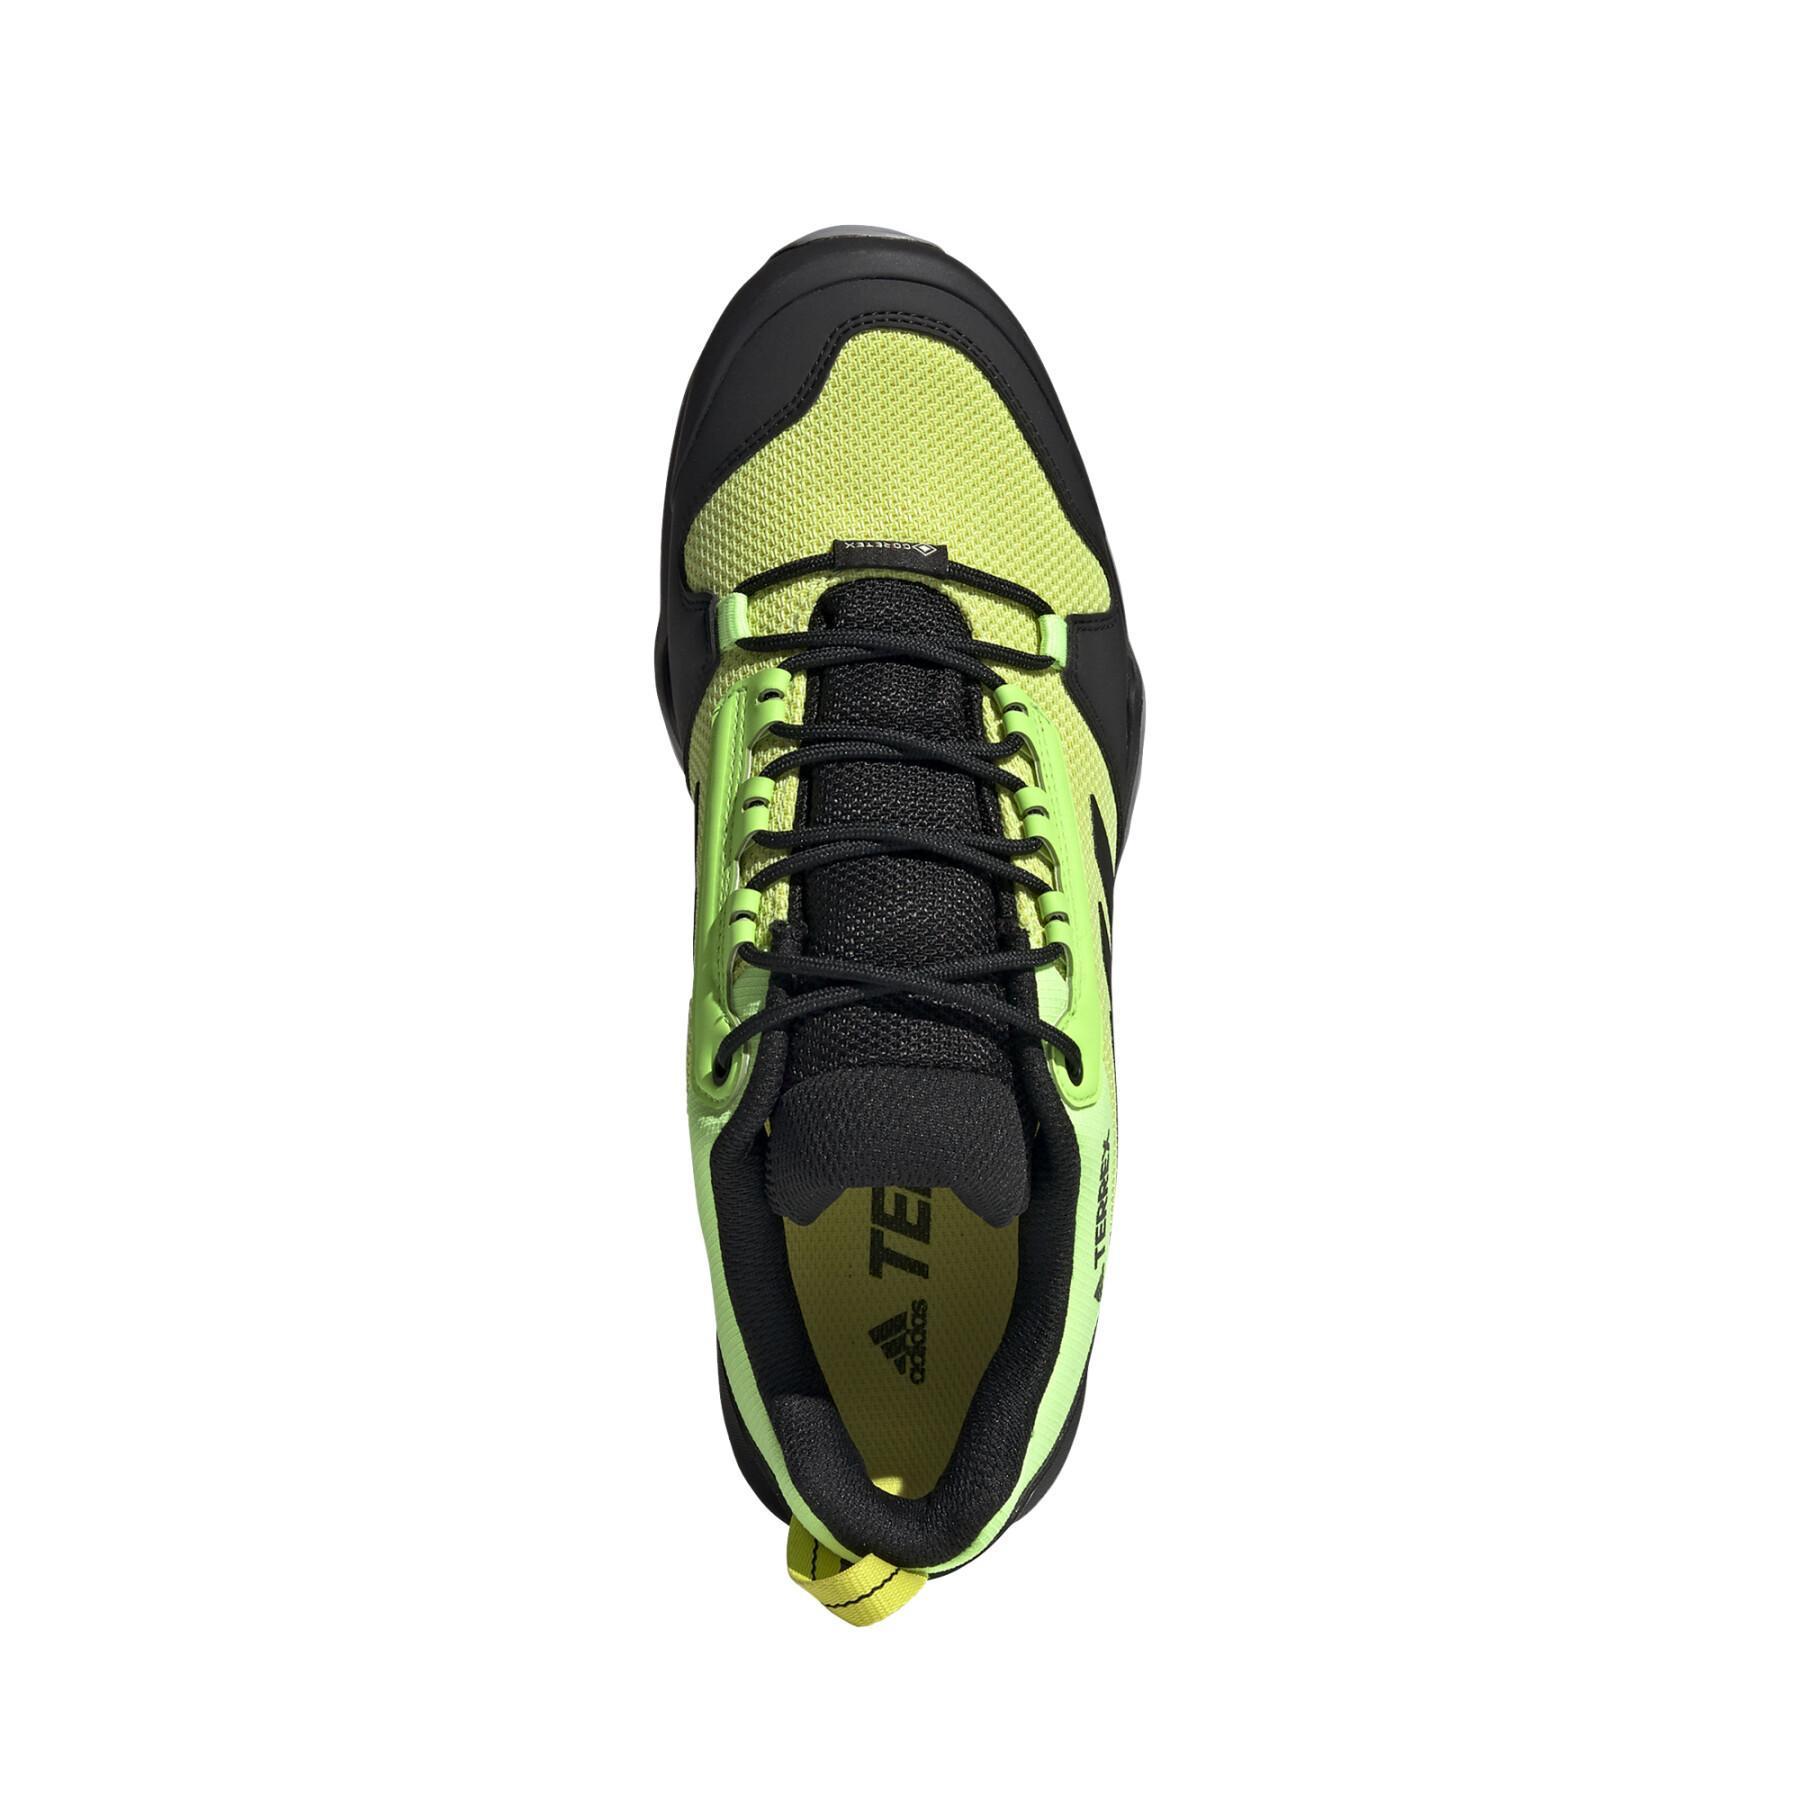 Schuhe adidas Terrex Ax3 Gore-Tex